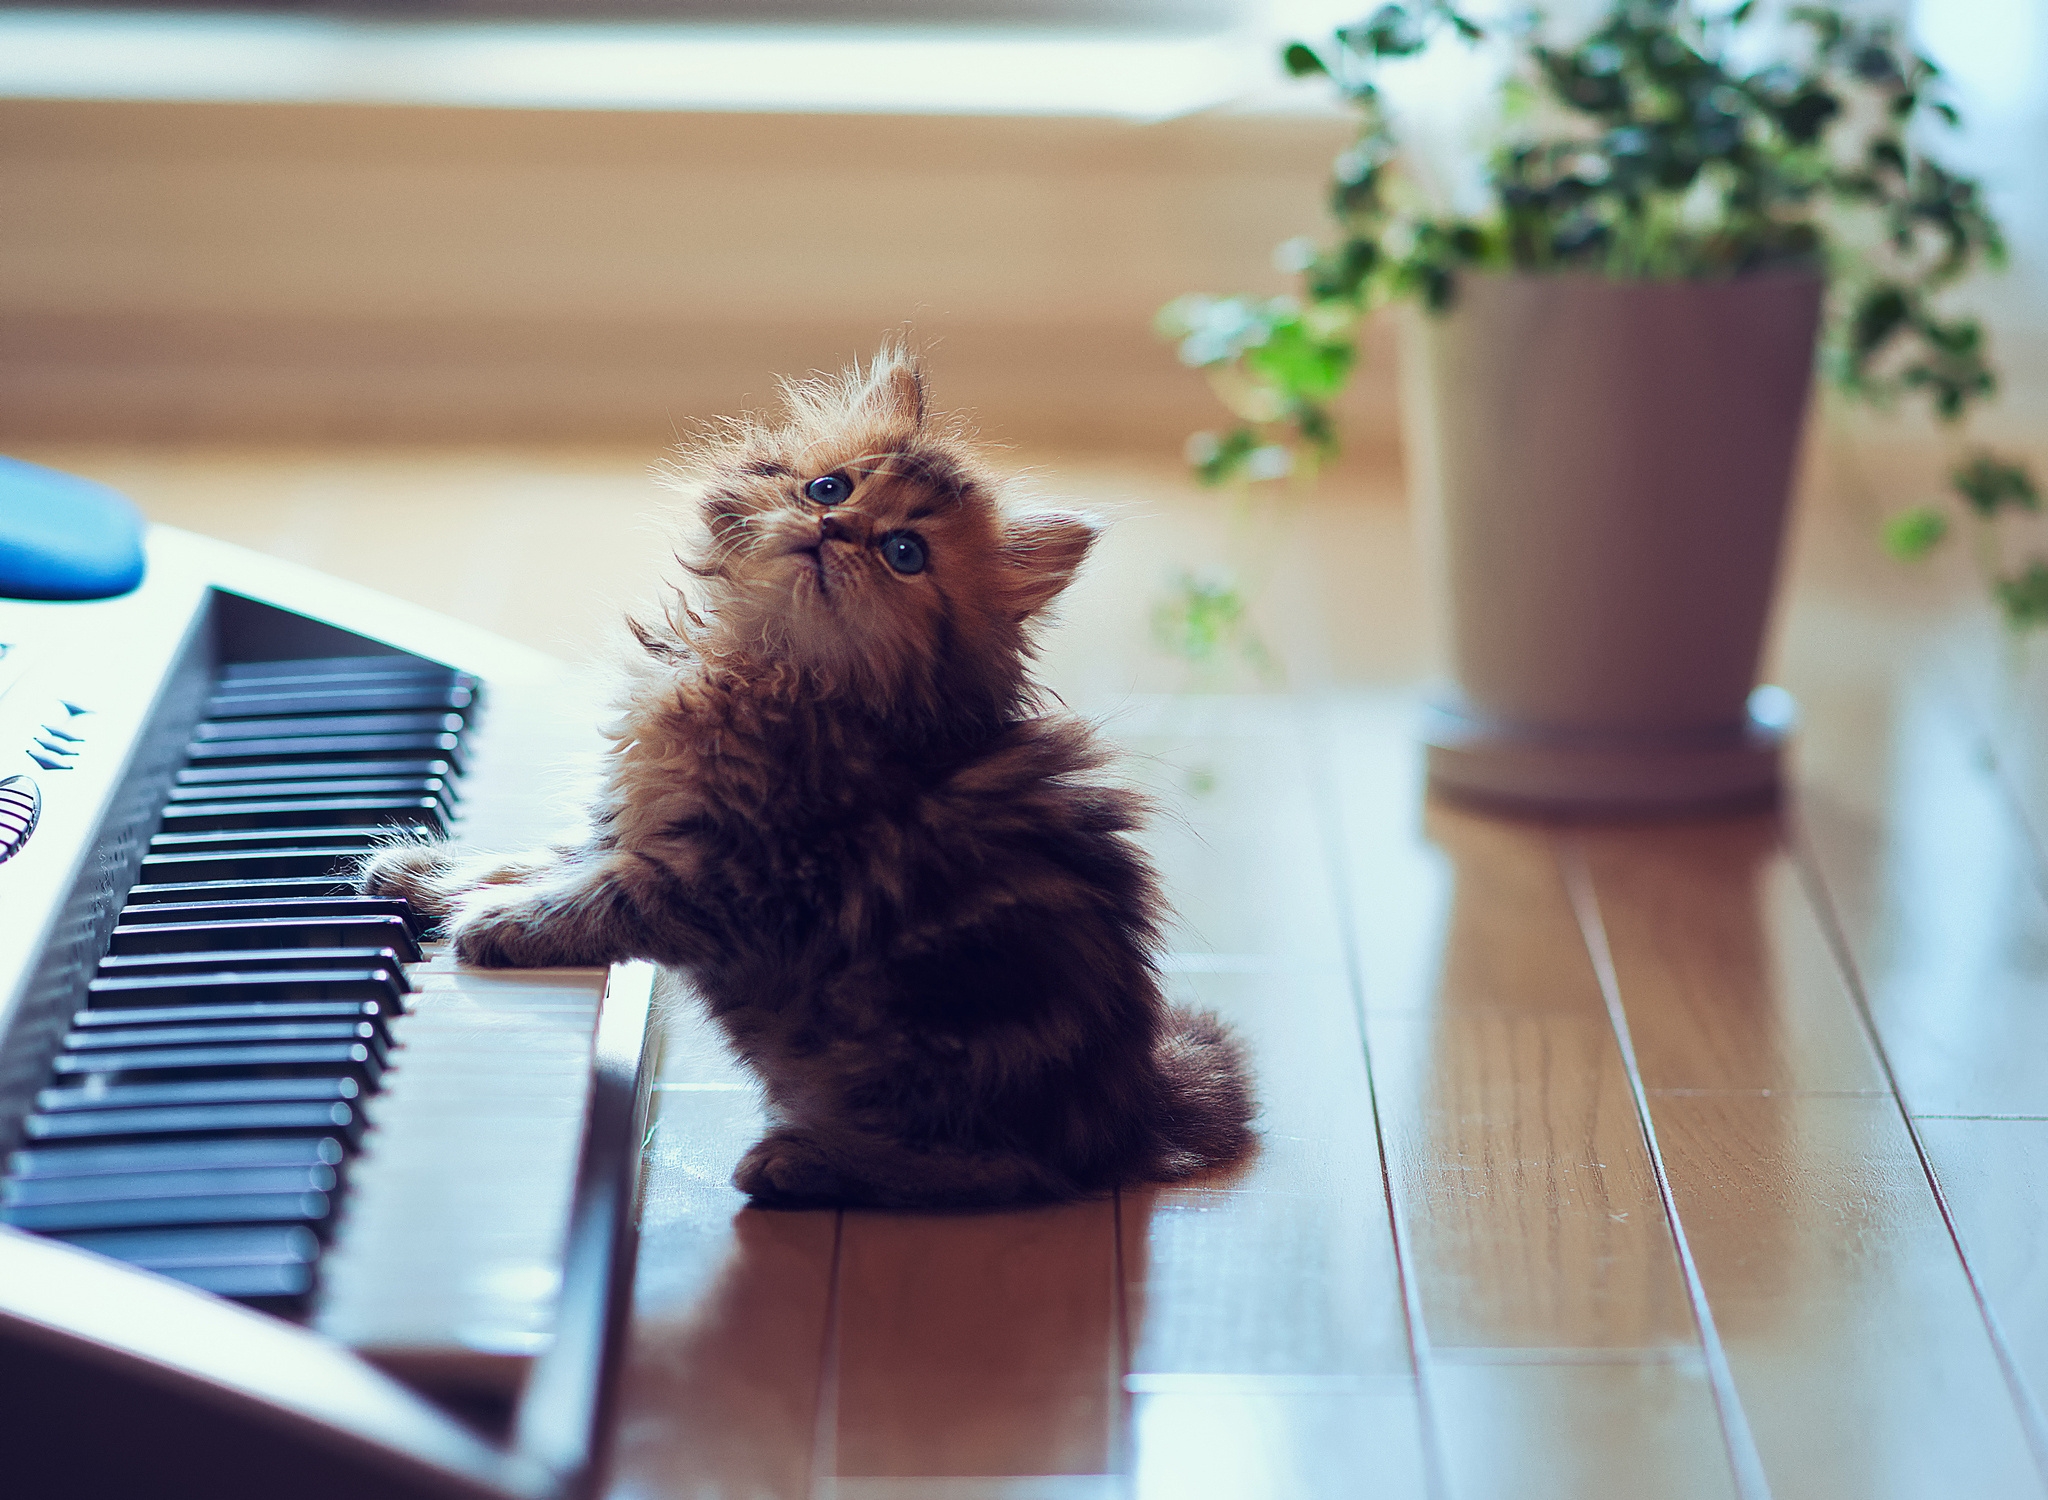 kitty, kitten, animals, sit, fluffy, playful, synthesizer, keys, floor